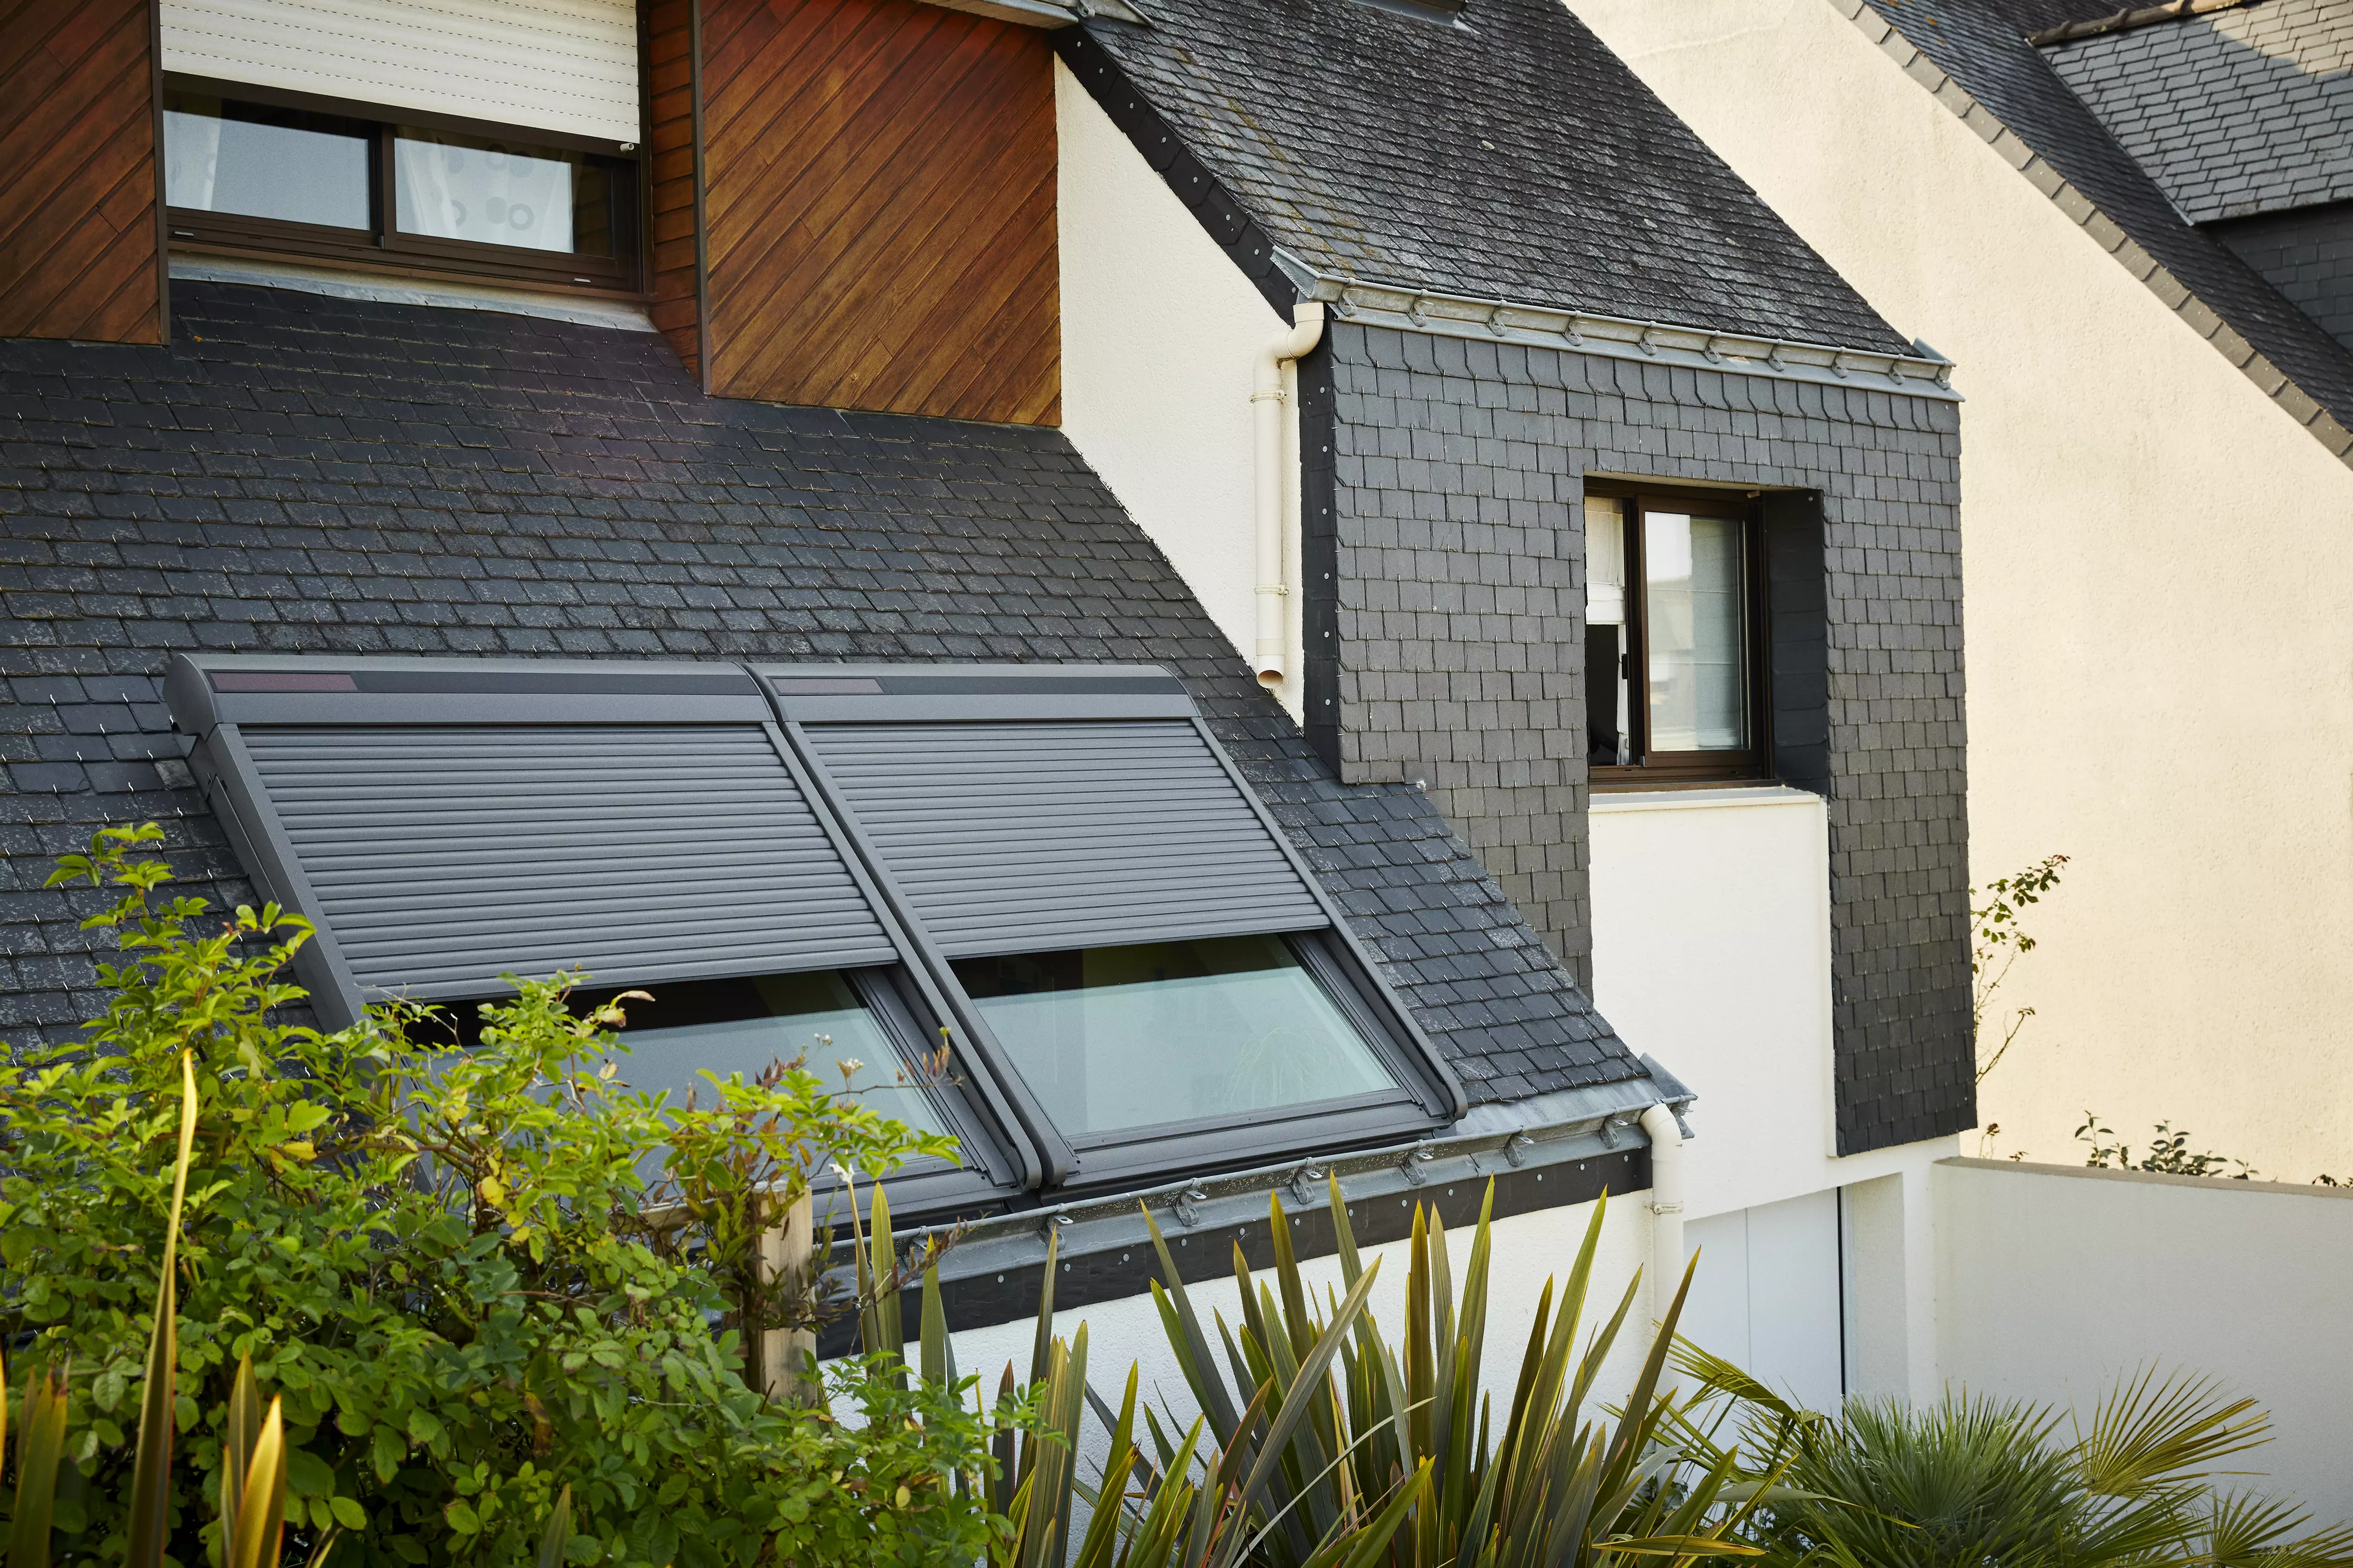 Une maison moderne avec des panneaux solaires sur le toit, illustrant un choix d’énergie durable. La fenêtre de toit Velux ajoute une touche de lumière naturelle à l’intérieur de la maison.